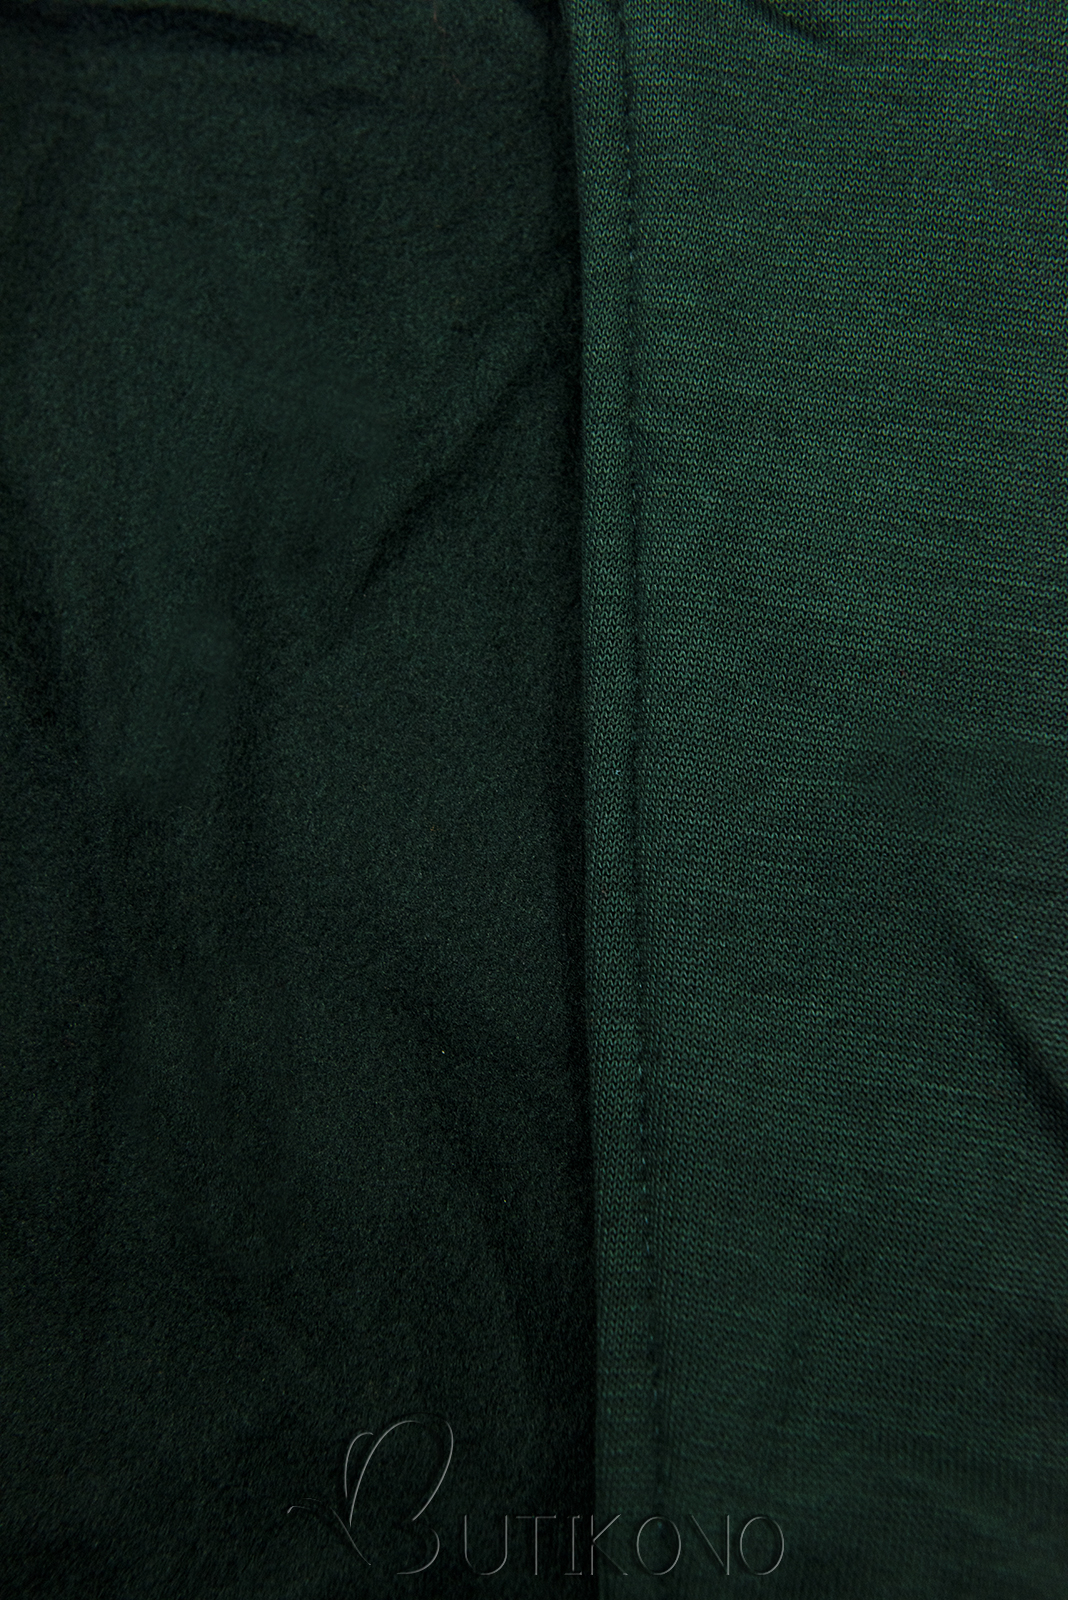 Smaragdově zelená dlouhá mikina se šikmým zipem